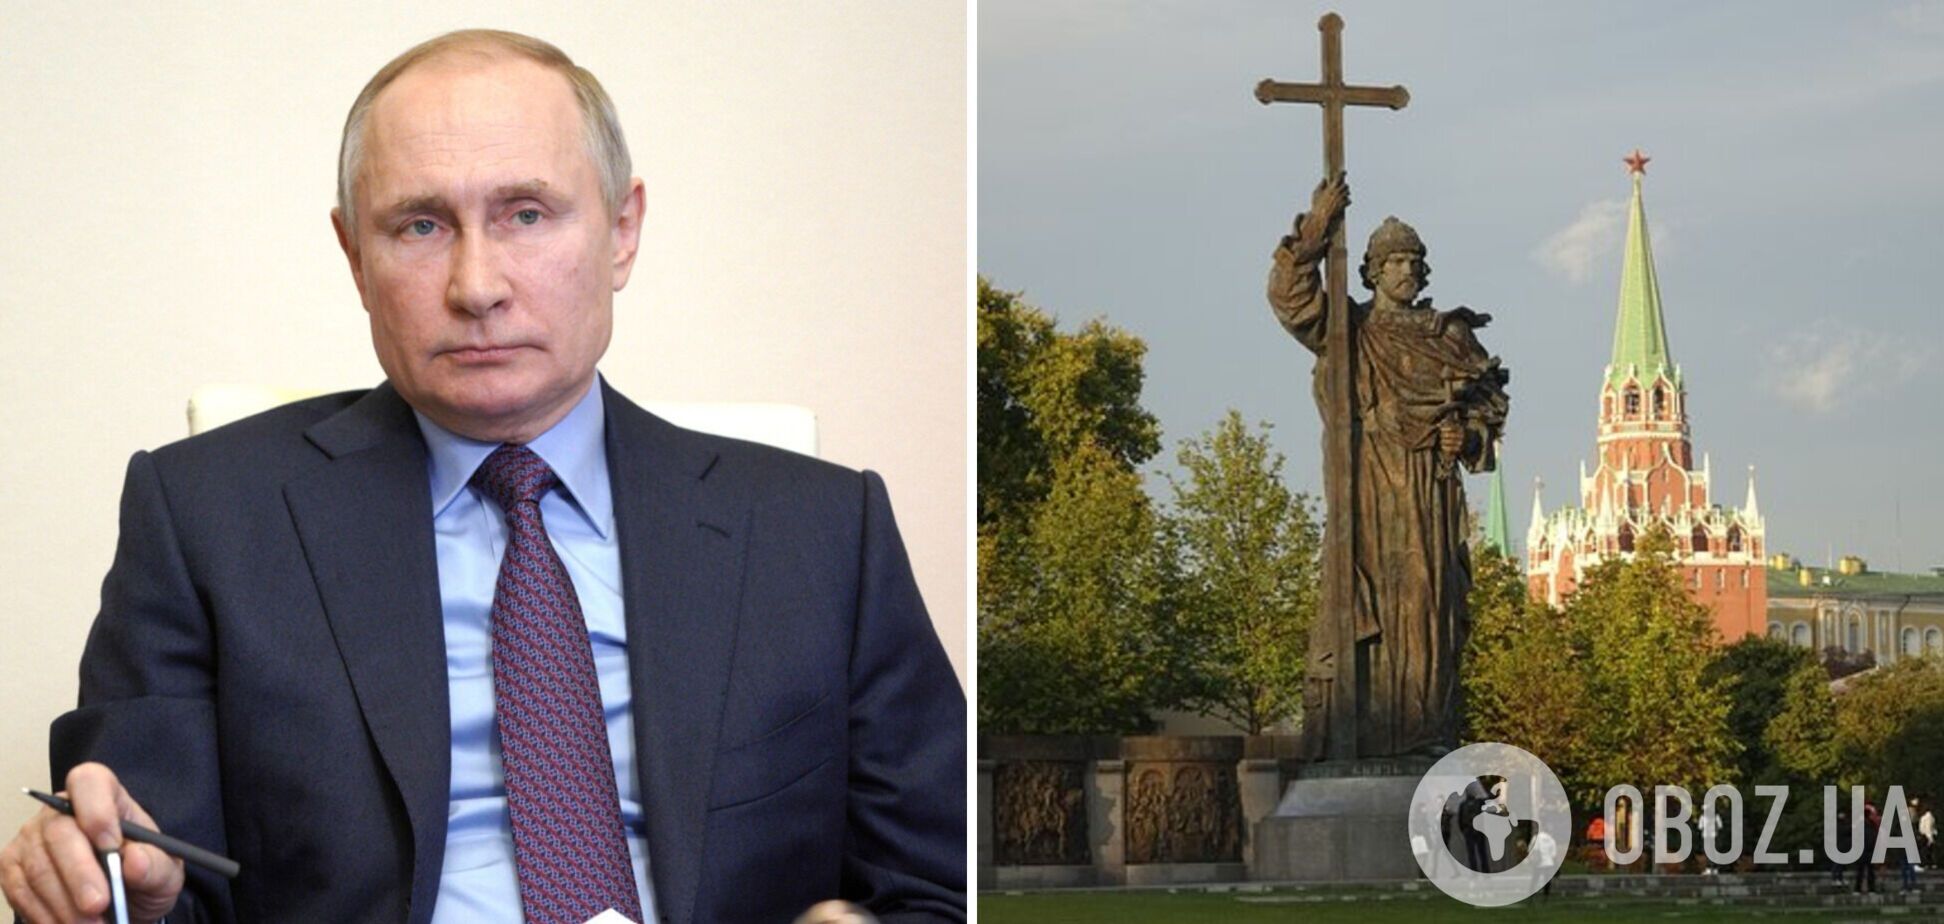 Ученый пояснил, зачем Путину памятник князю Владимиру в центре Москвы